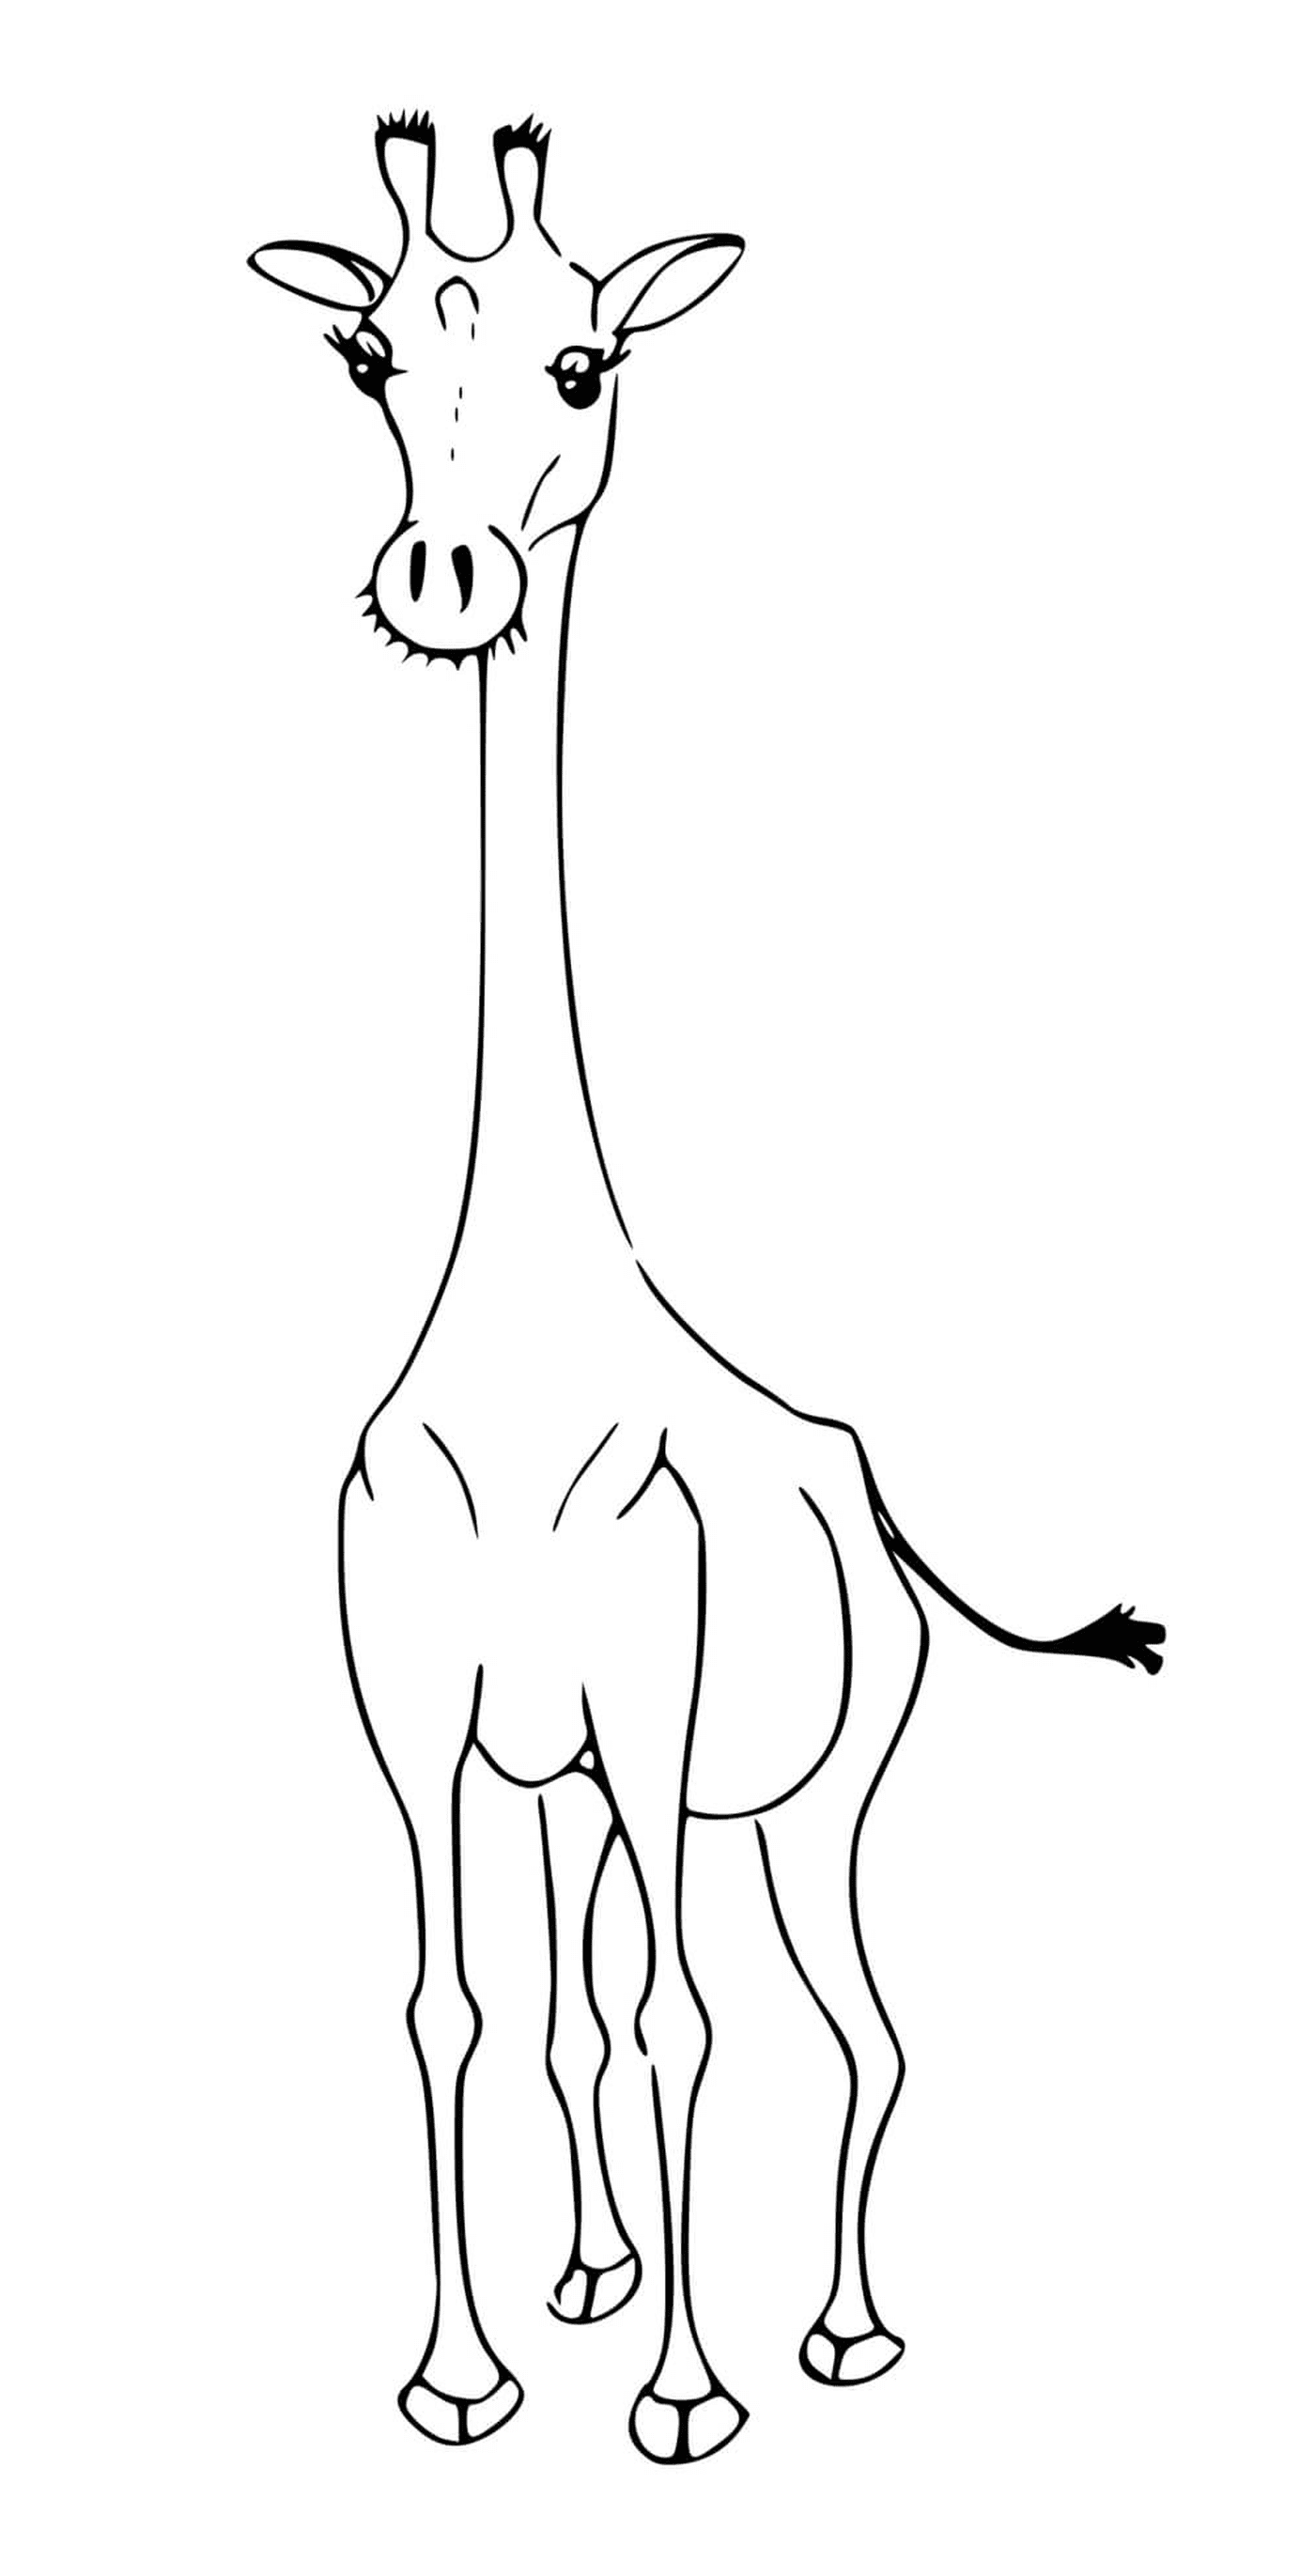  Жираф без своих характерных пятен 